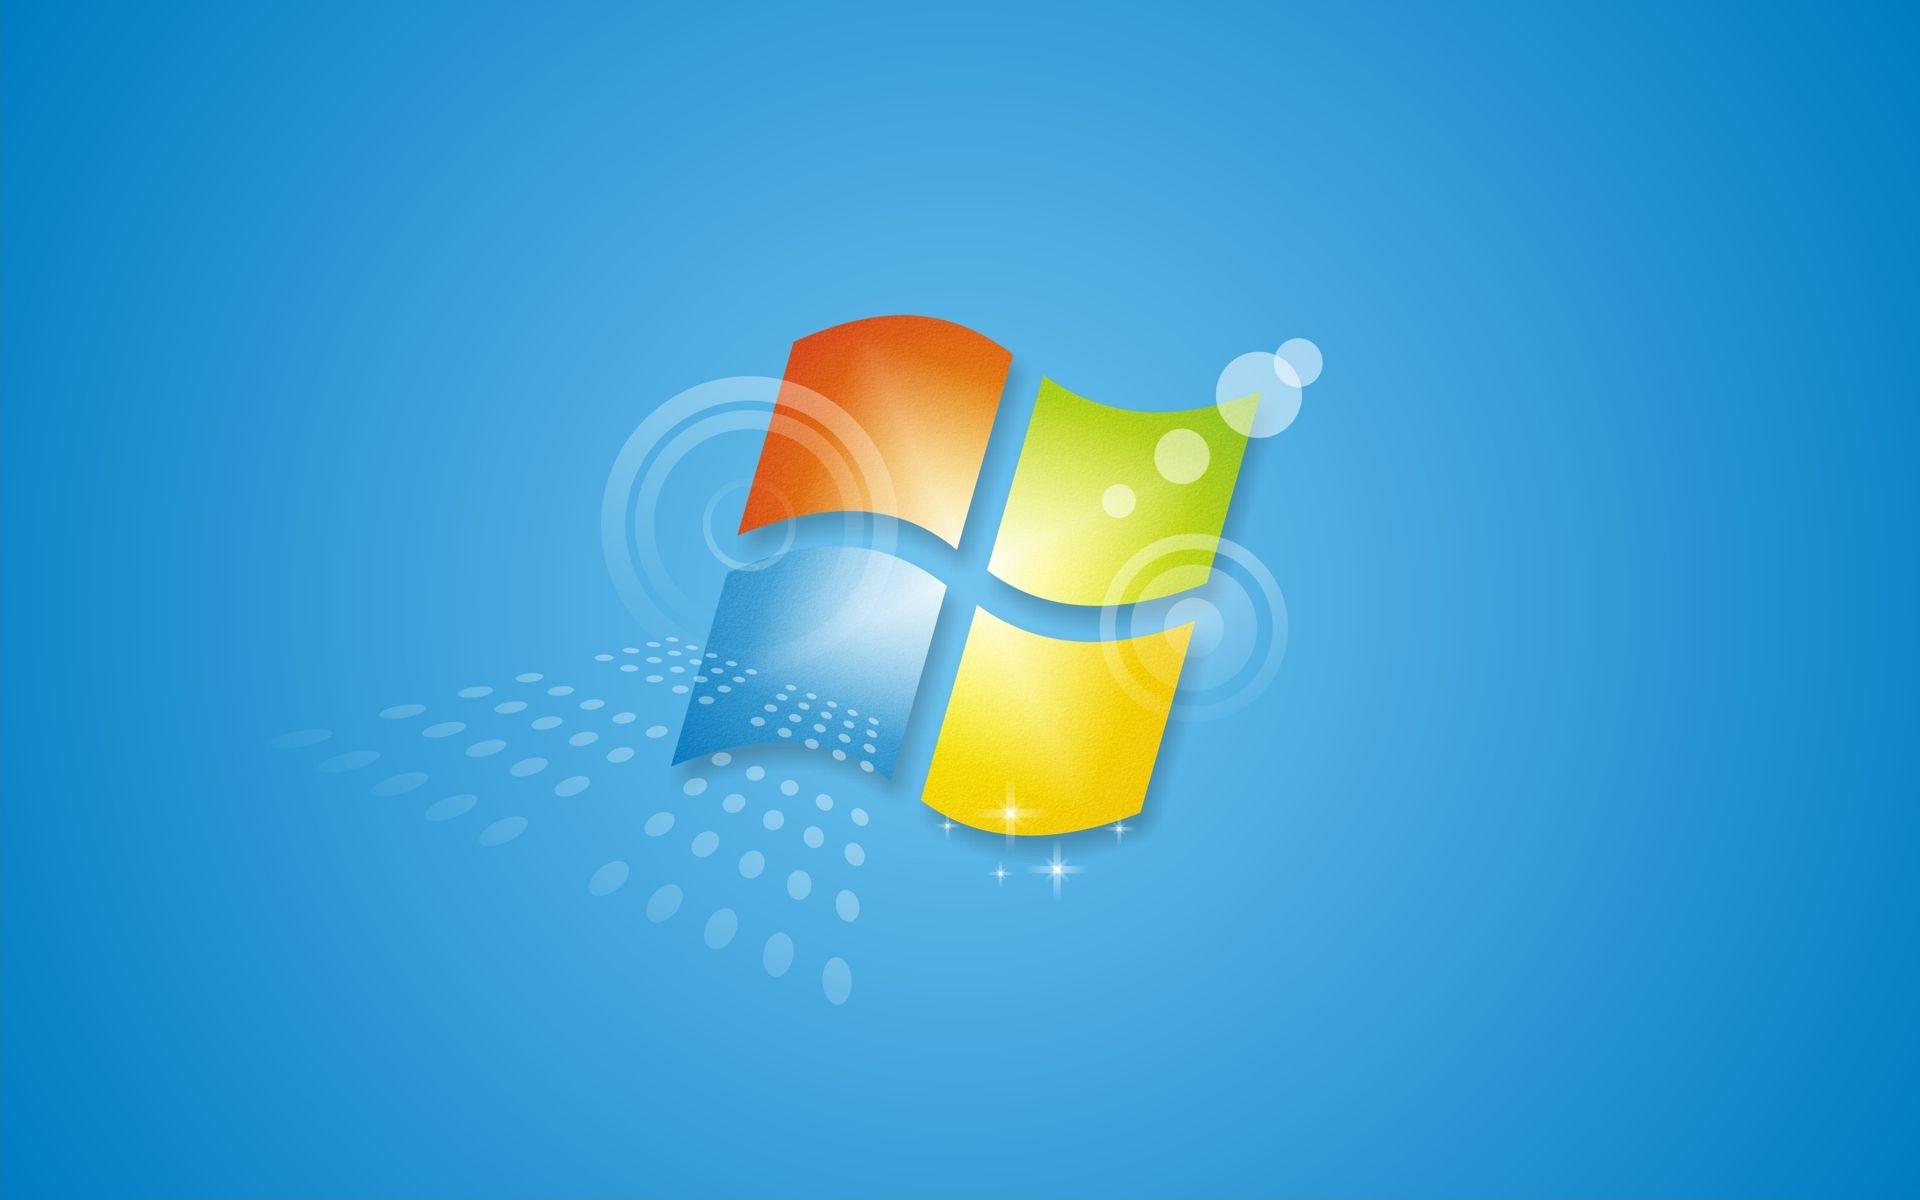 Windows 7 : un hack pour contourner la fin du support